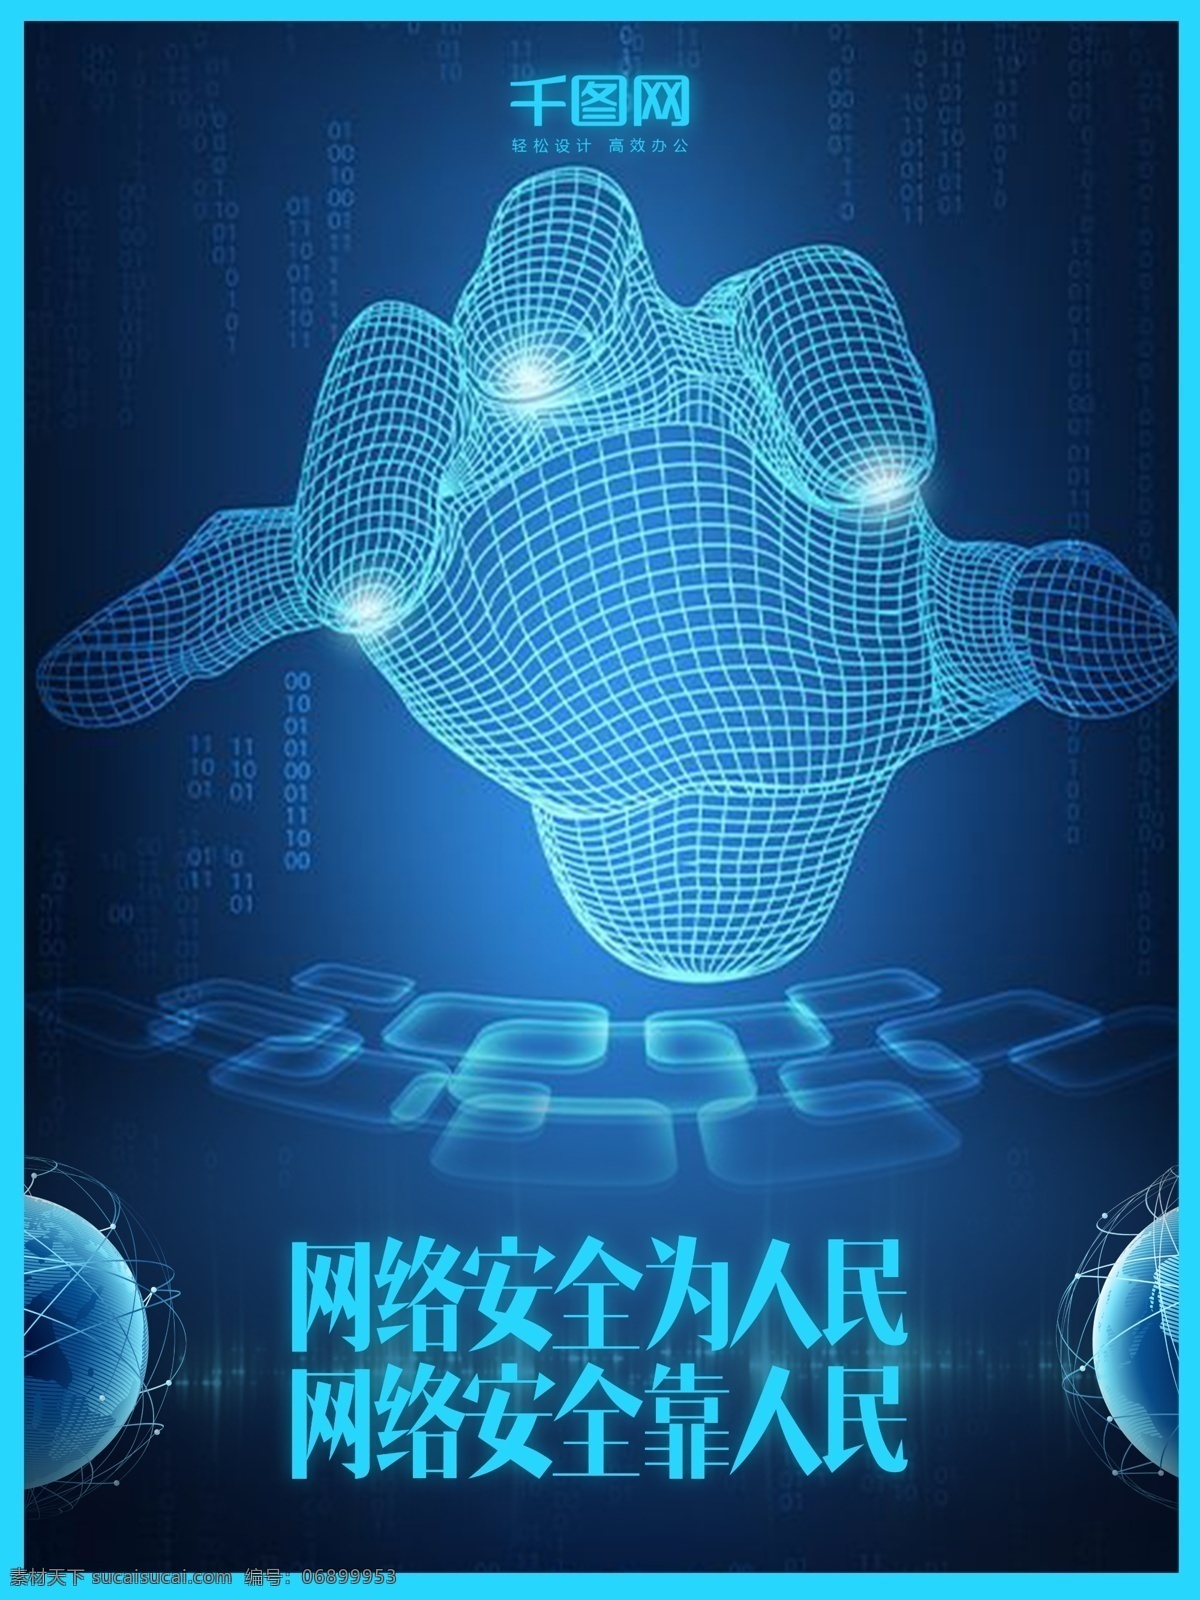 蓝色 科技 网络安全 建设 公益 海报 网络 安全 虚拟 世界 手指 手掌 线条 地球